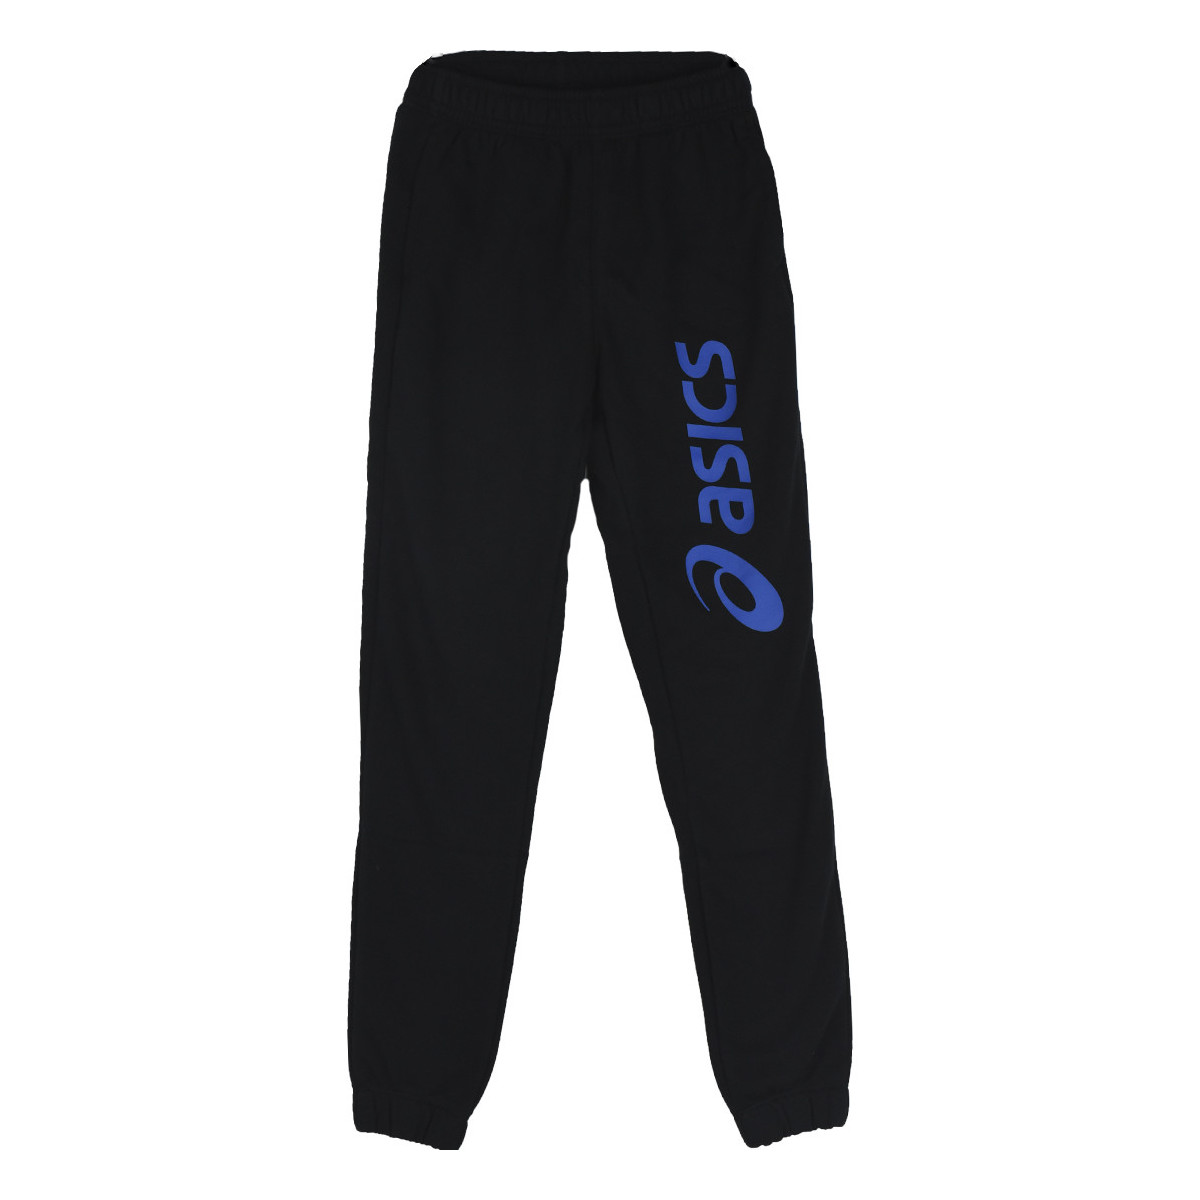 Textil Chlapecké Teplákové kalhoty Asics Big Logo Sweat Jr Pant Černá